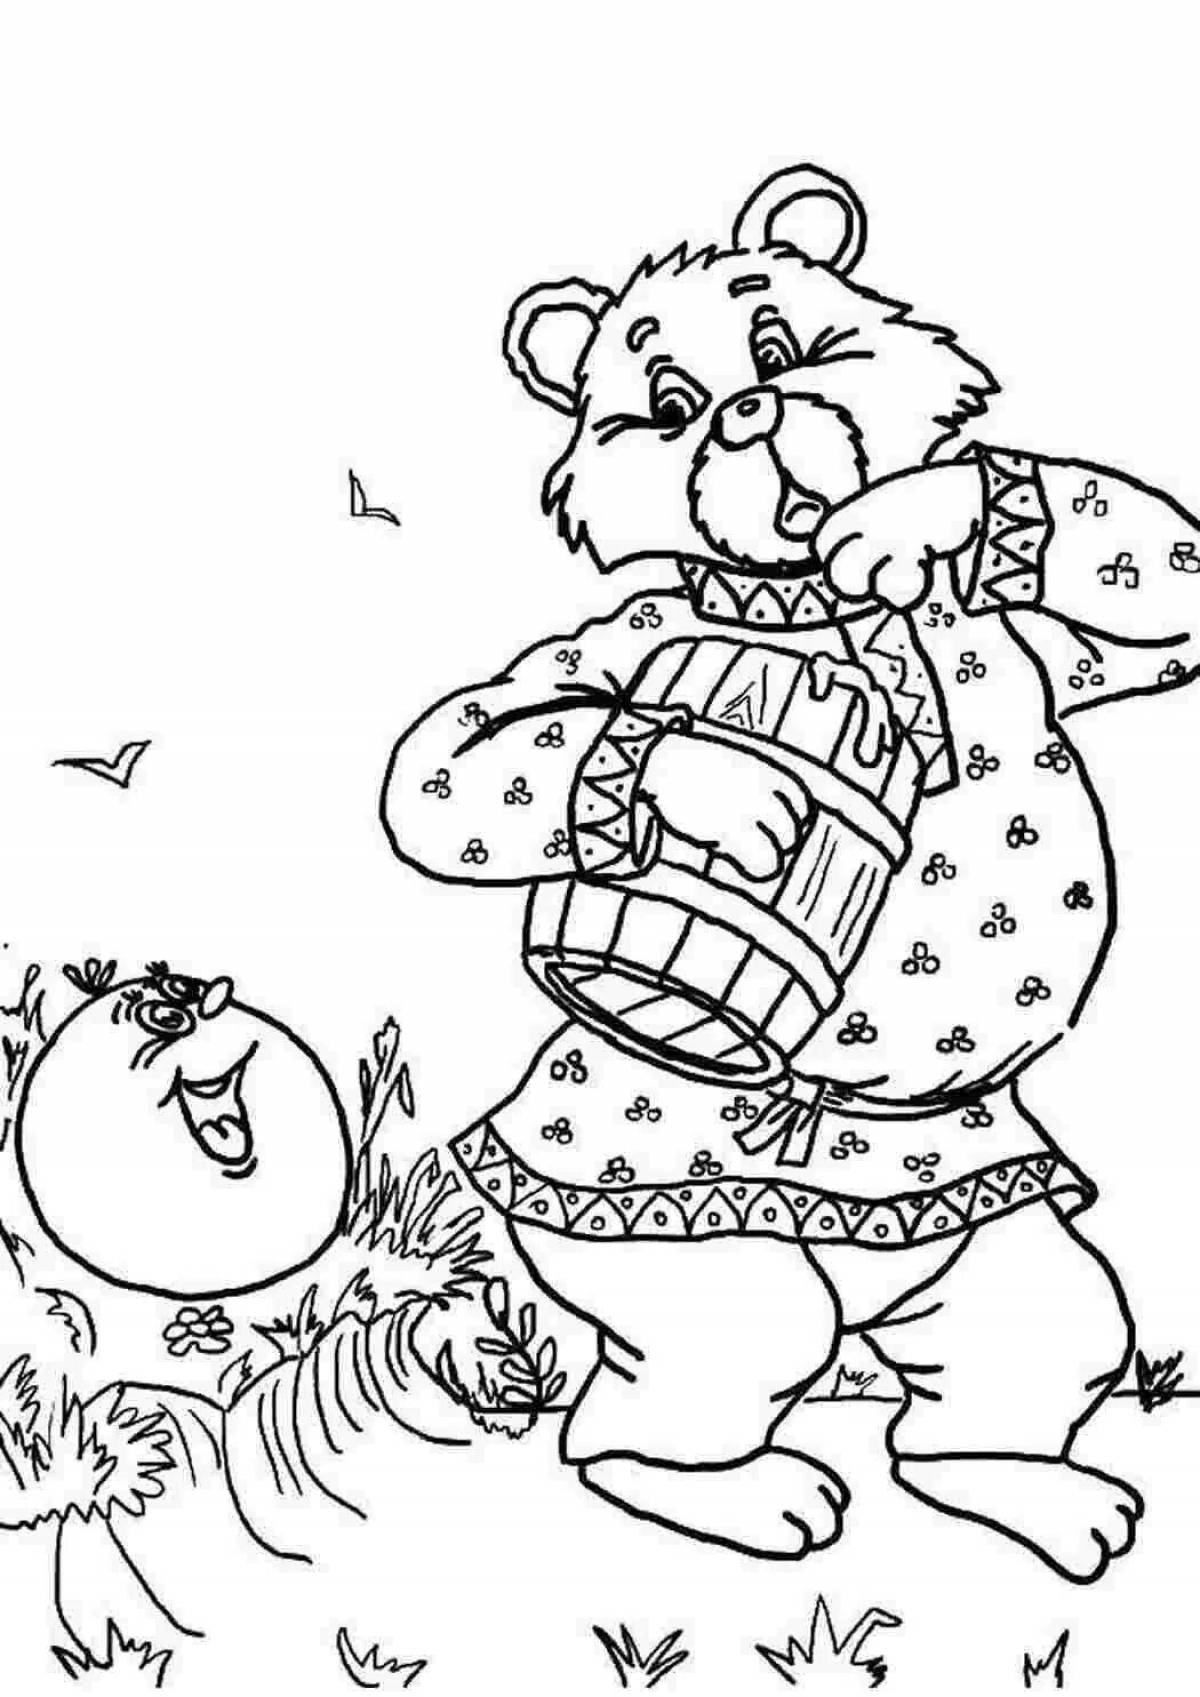 Медведь из колобка раскраска для детей